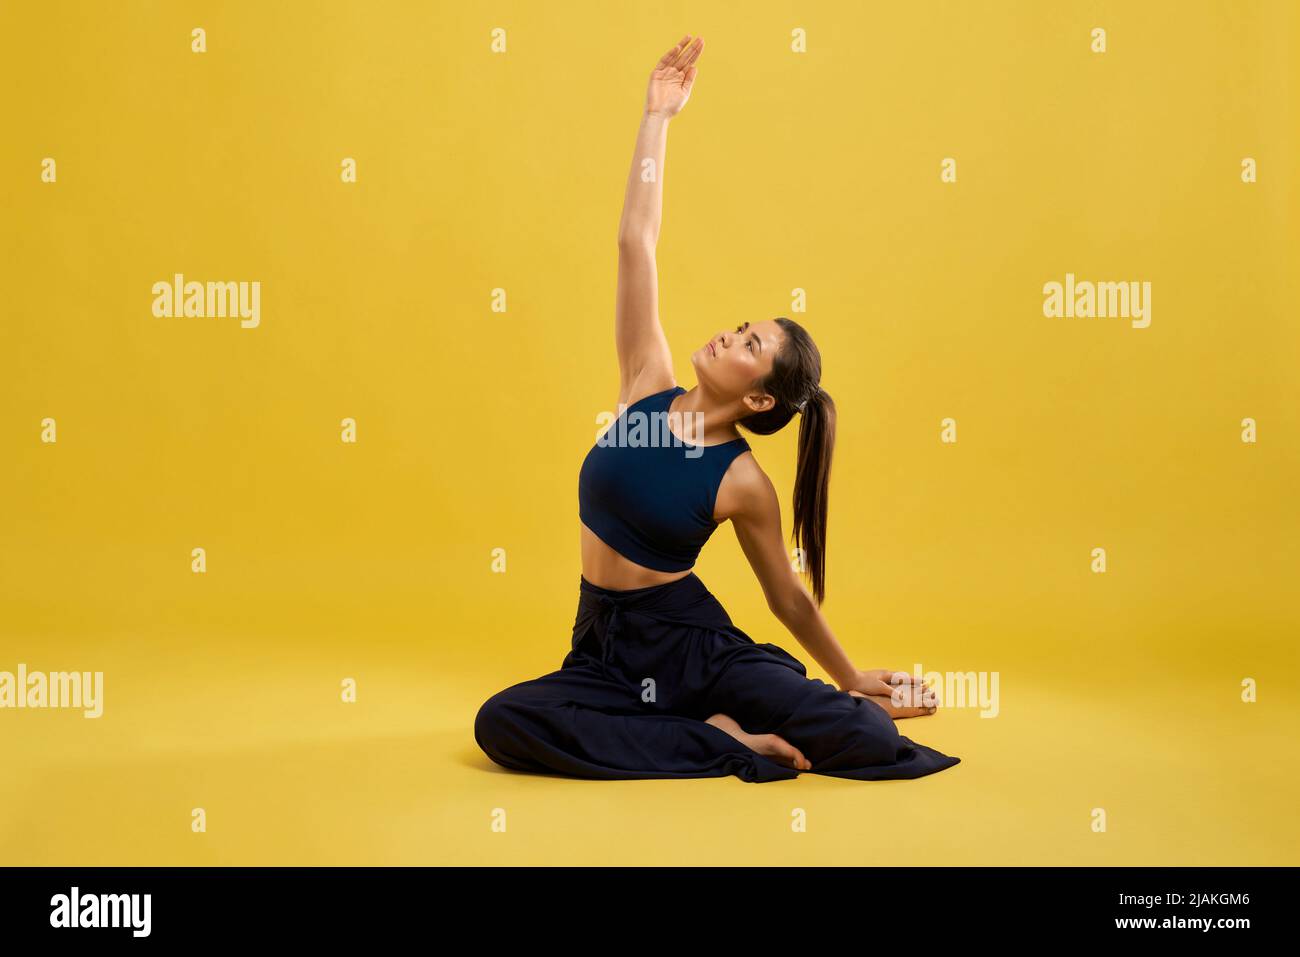 Vista frontal de una mujer flexible y bonita sentada en pose de yoga en el estudio. Chica delgada en negro activo posando con el brazo, estirado en el aire, aislado sobre fondo de estudio amarillo. Concepto de yoga. Foto de stock